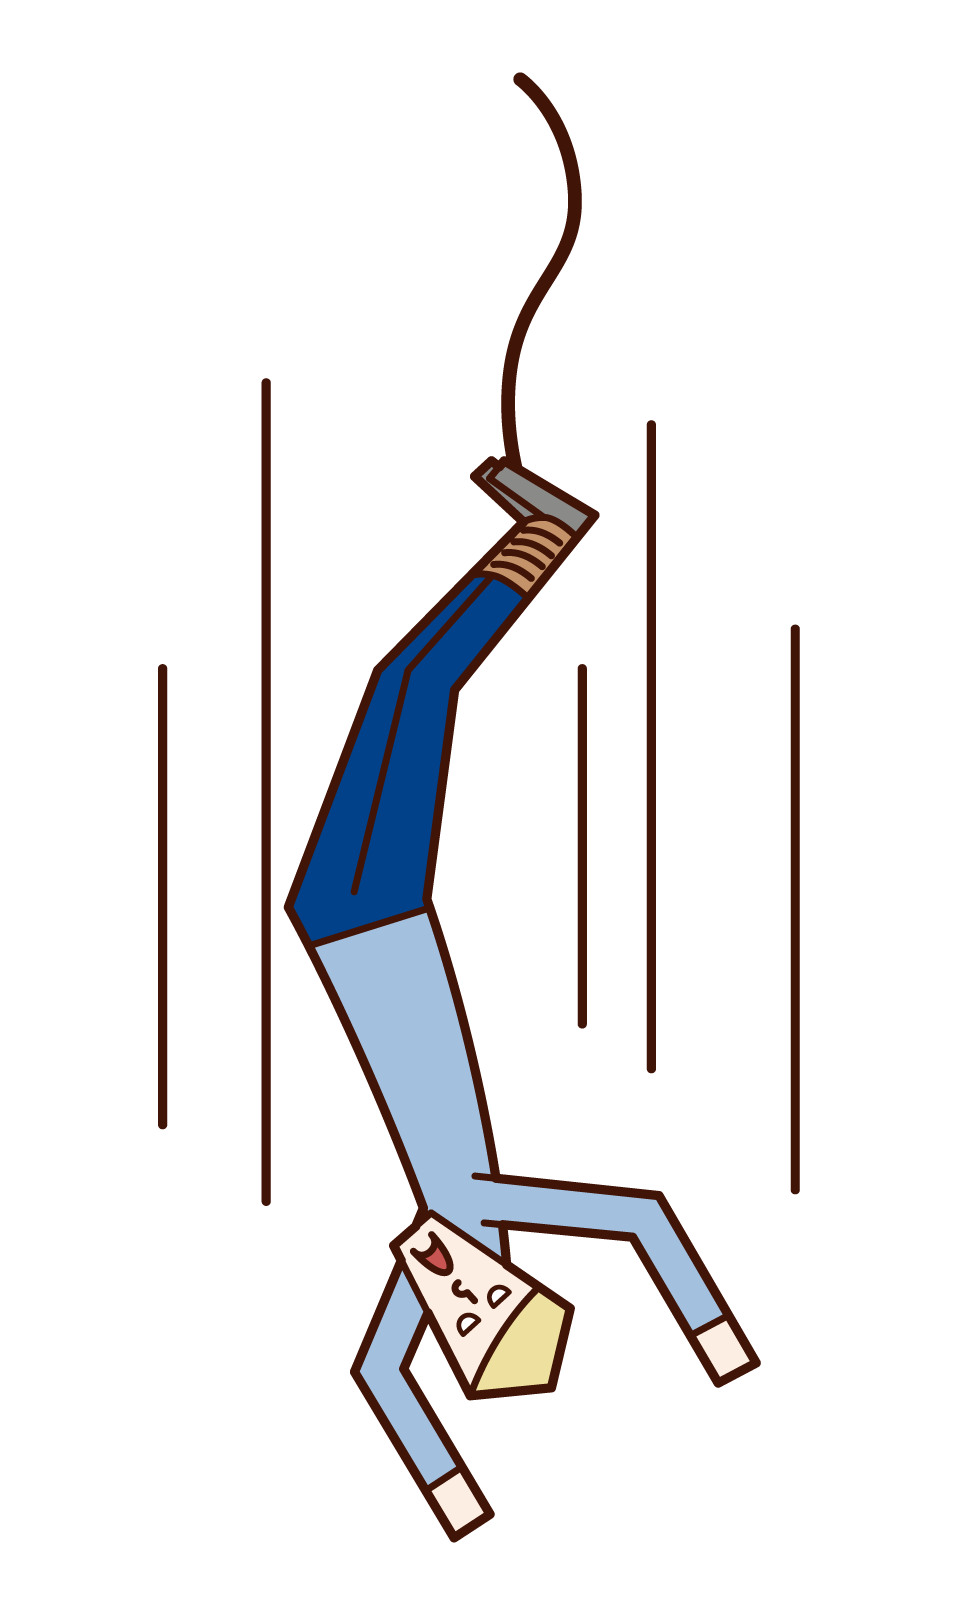 번지 점프 (남성)의 그림